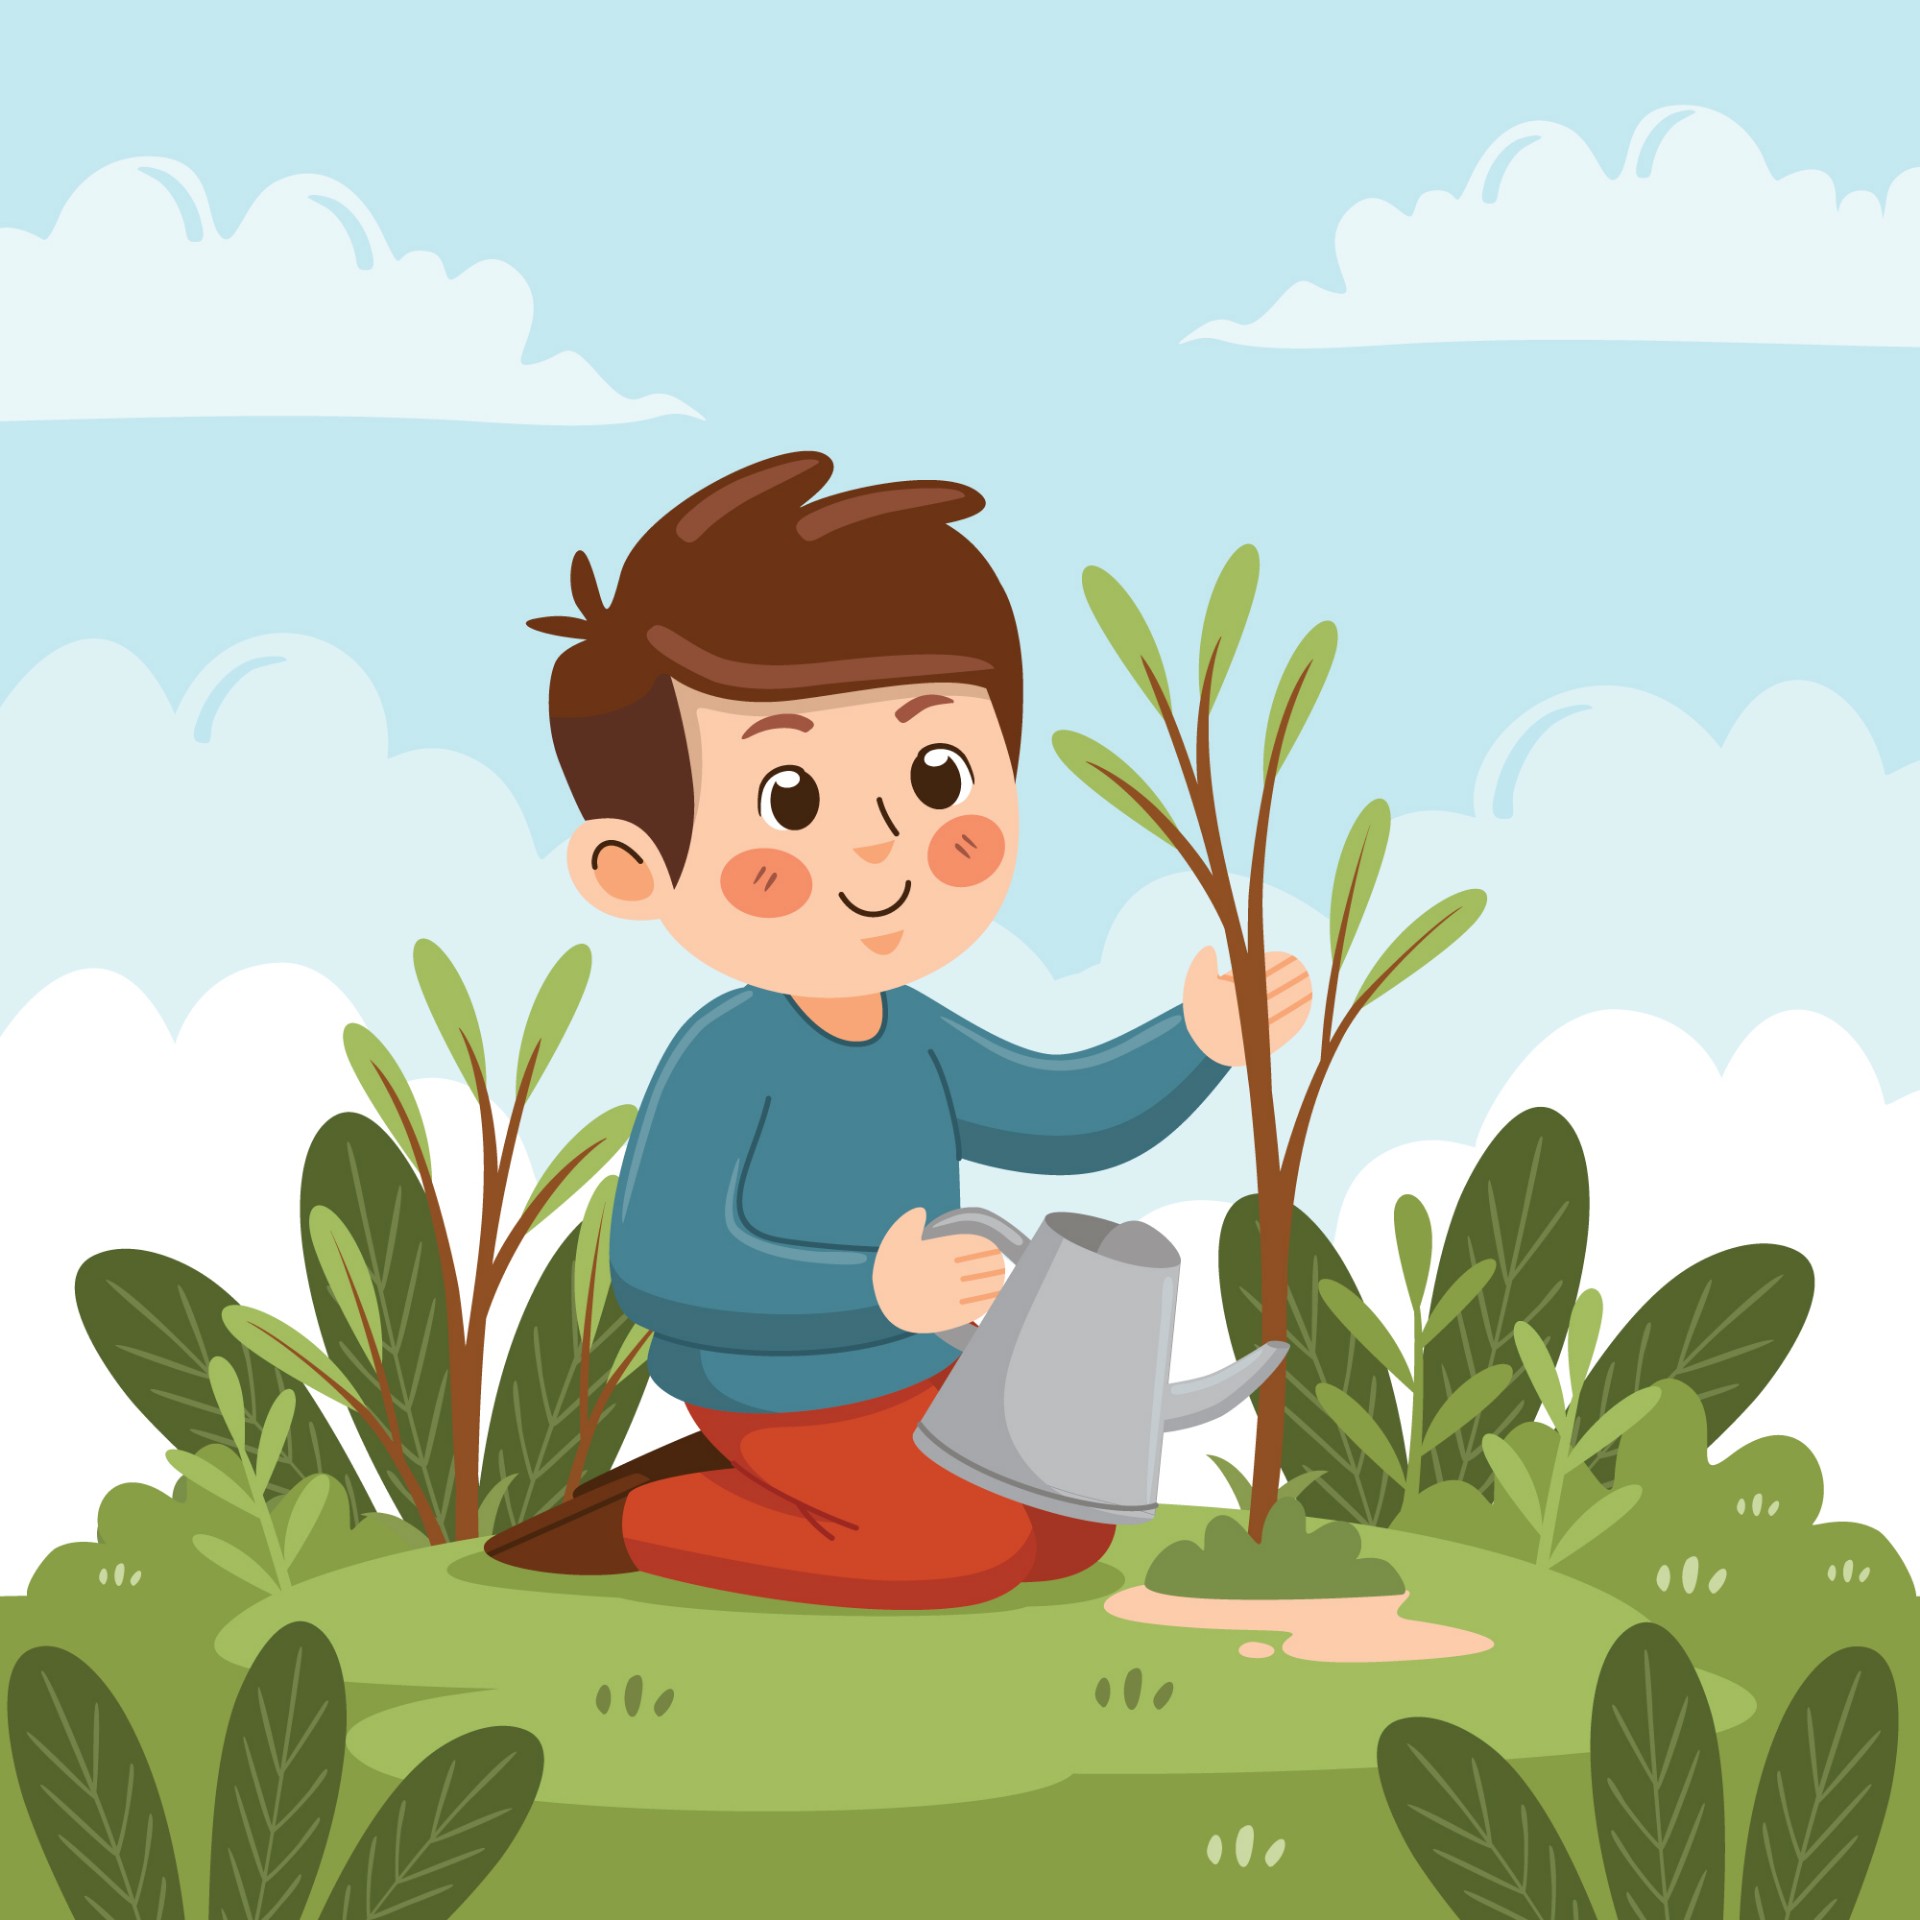 可愛男孩種植小樹苗, 植樹節, 節日, 卡通小孩向量圖案素材免費下載，PNG，EPS和AI素材下載 - Pngtree